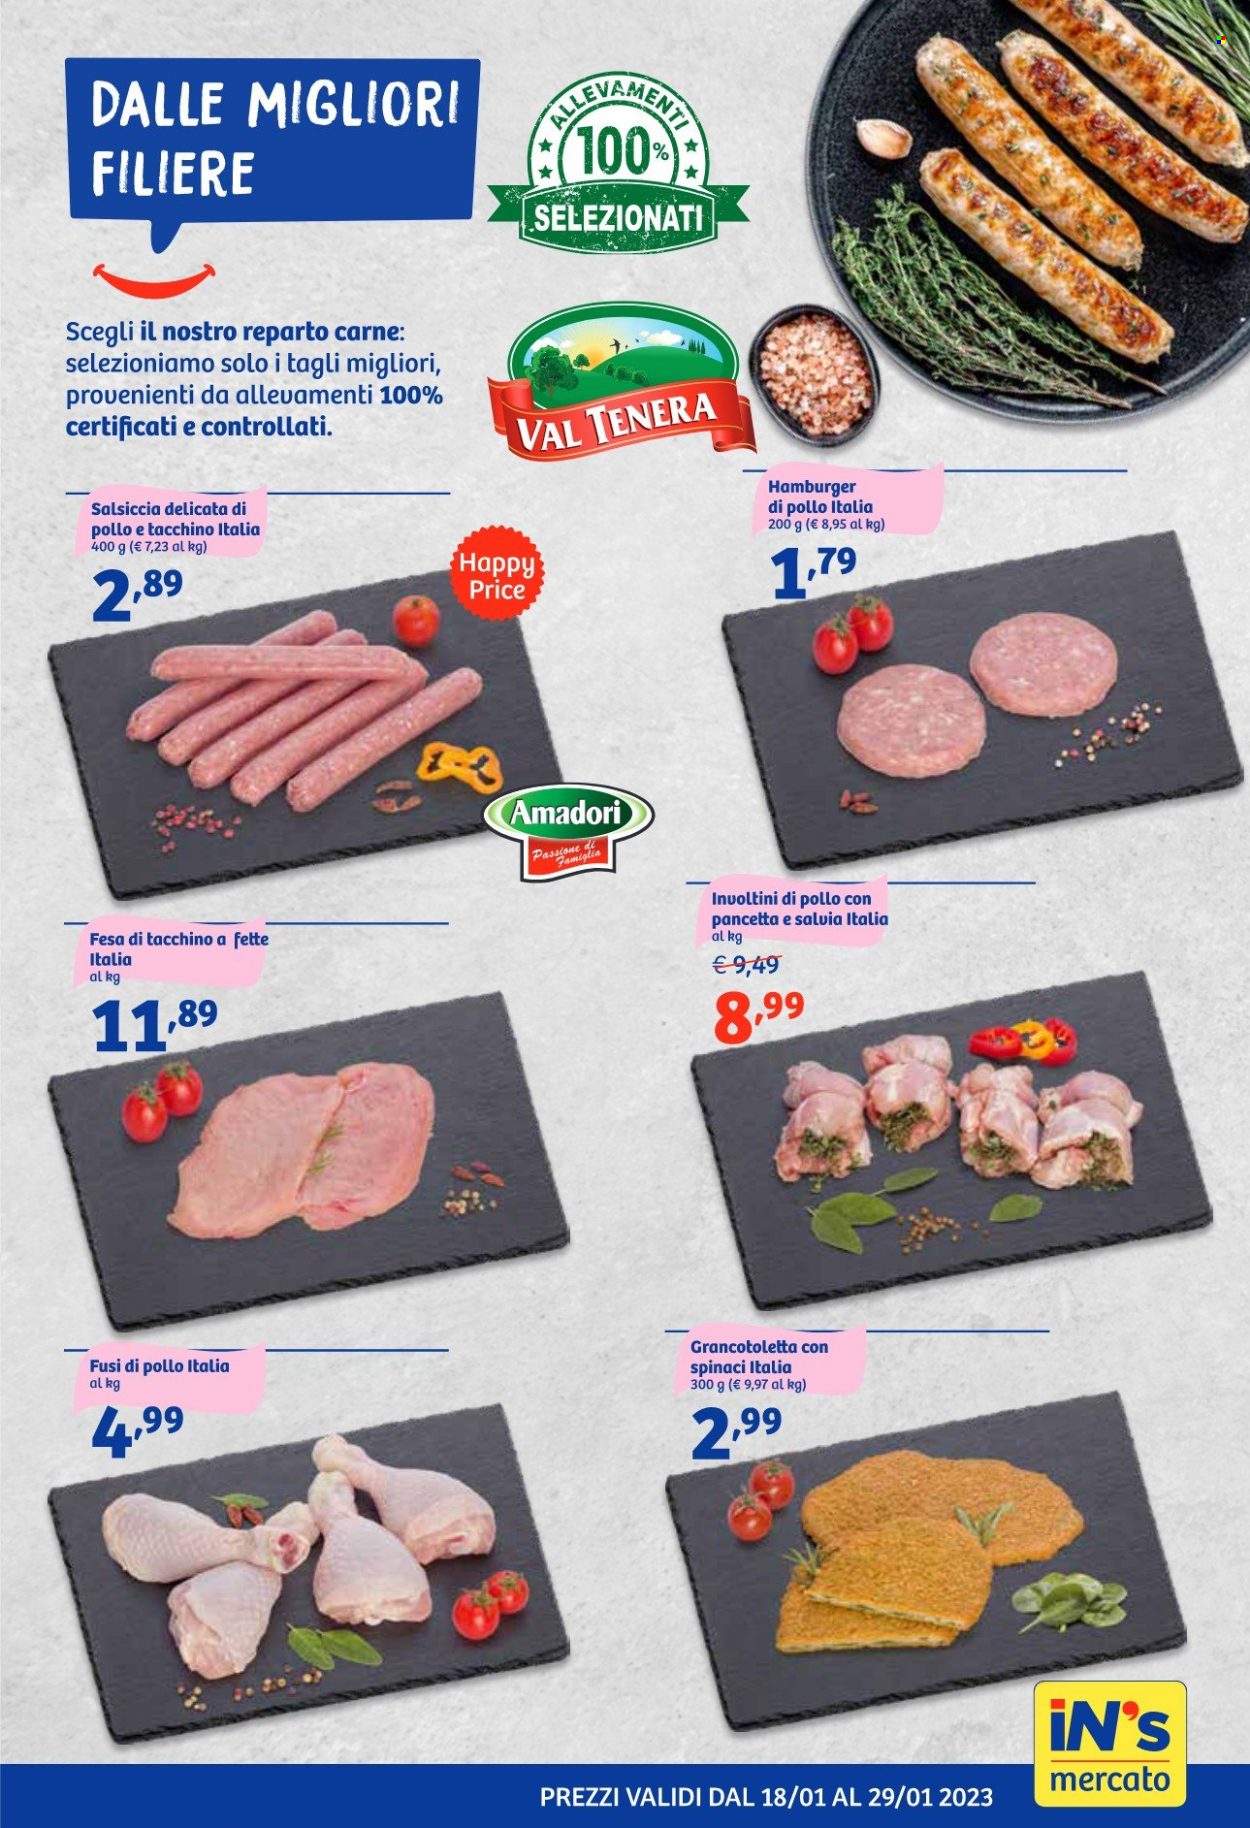 thumbnail - Volantino iN's Mercato - 18/1/2023 - 29/1/2023 - Prodotti in offerta - petto di tacchino, fusi di pollo, Amadori, salsiccia, hamburger, hamburger di pollo, involtini. Pagina 9.